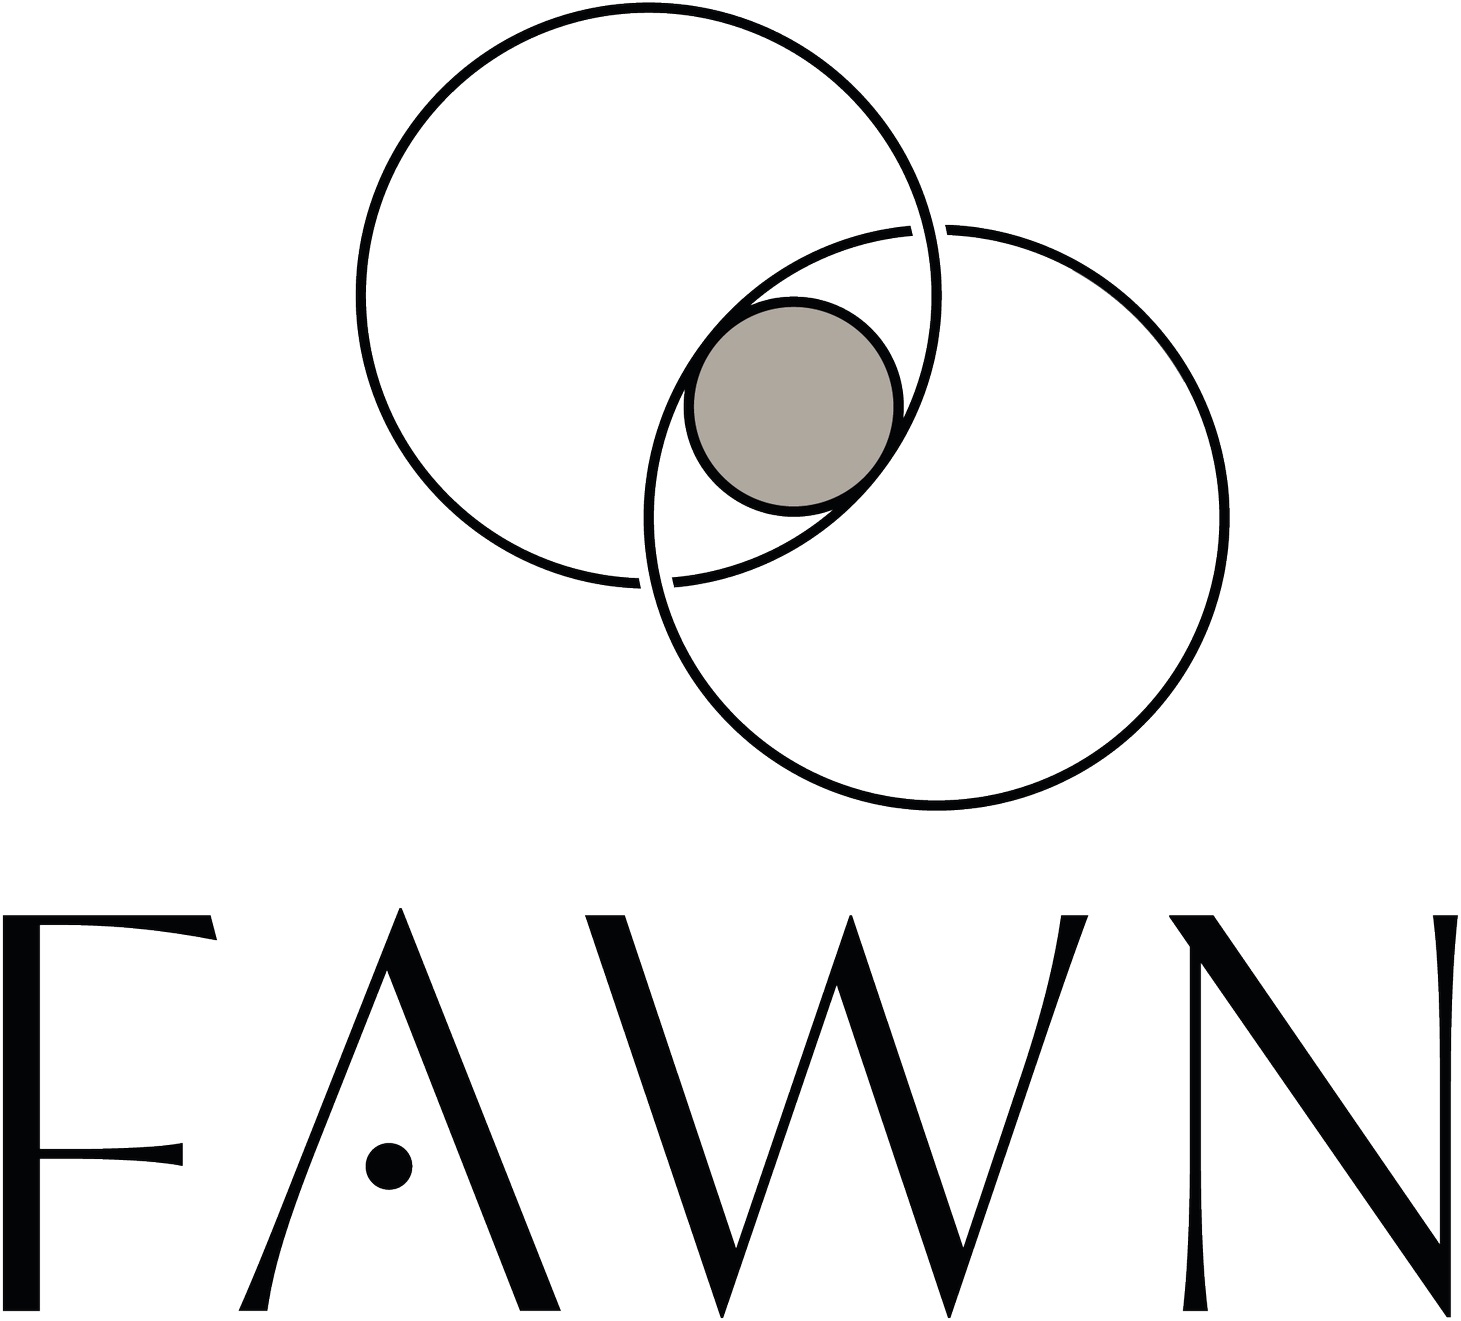 Fertility As A Way Network - F.A.W.N.